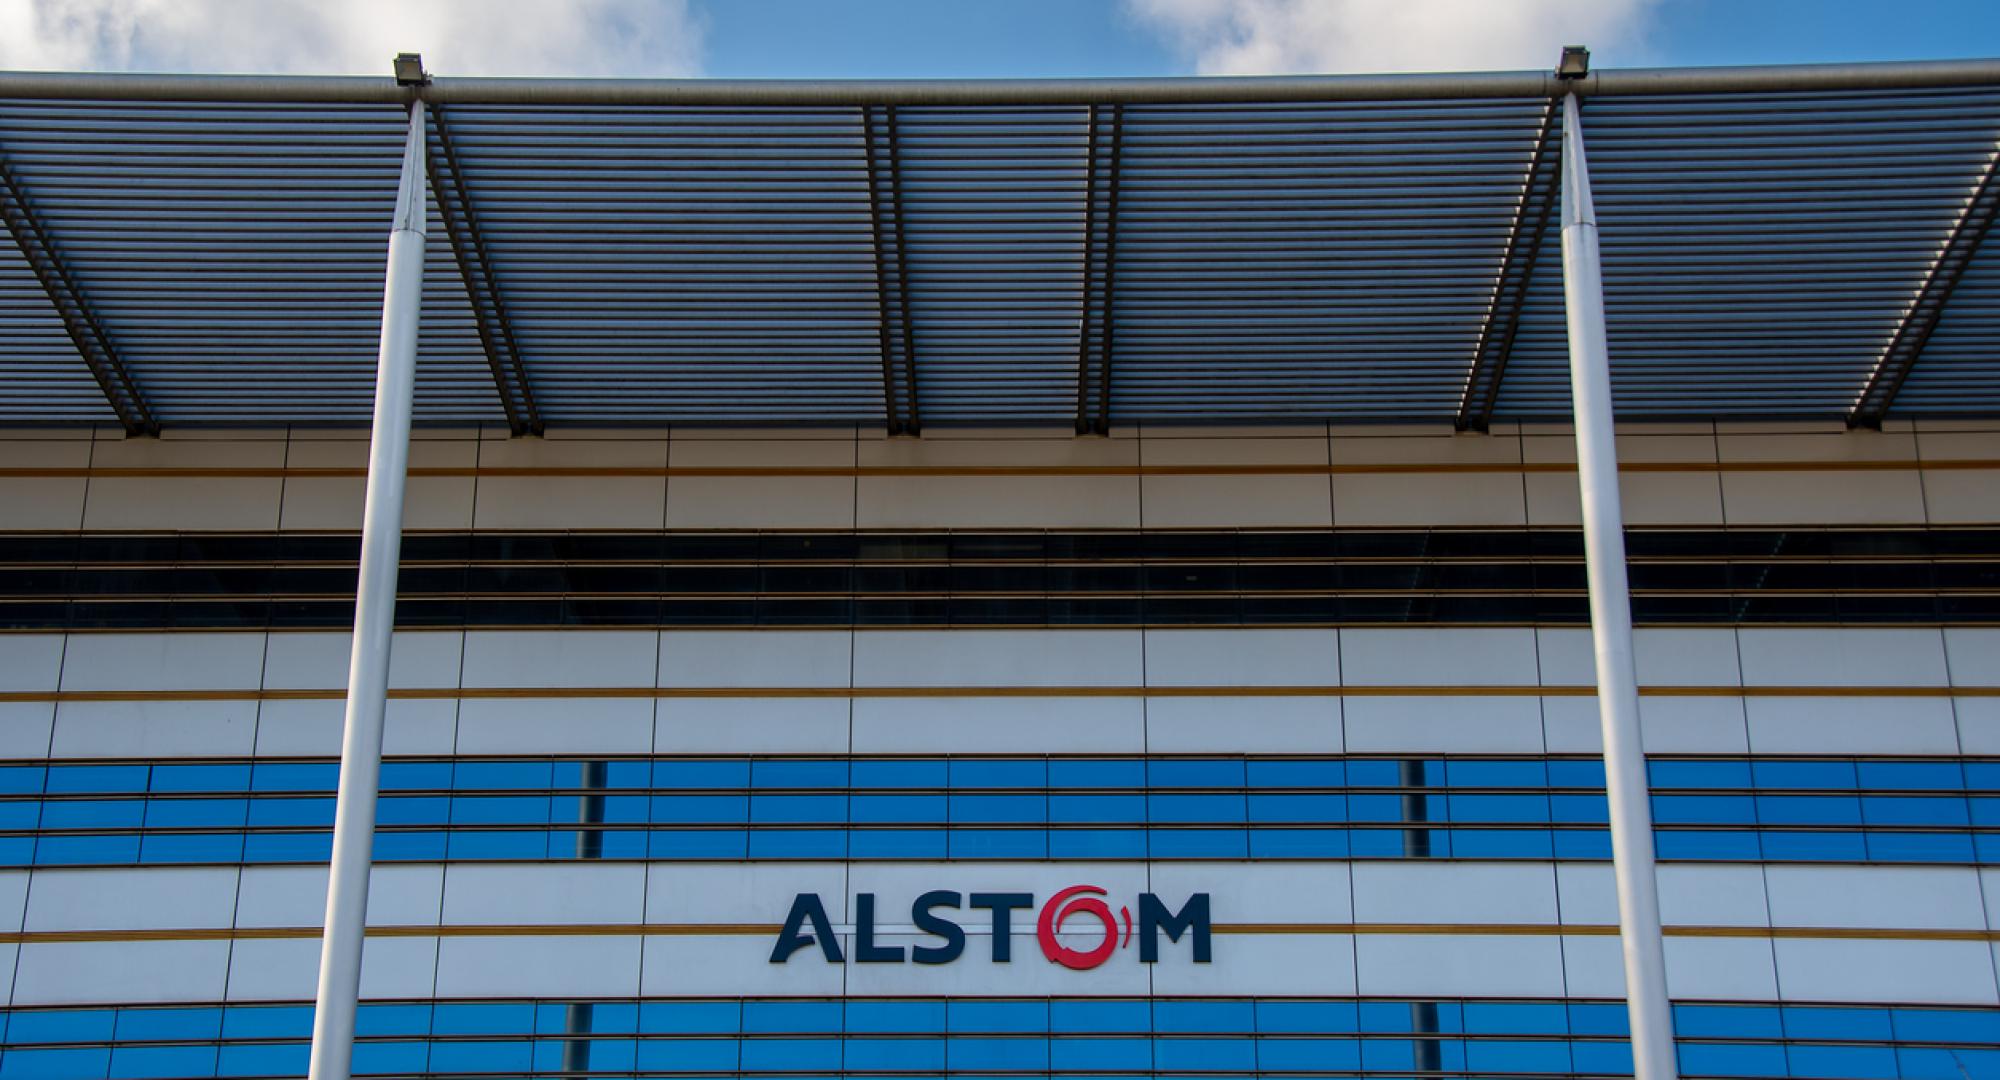 Alstom building